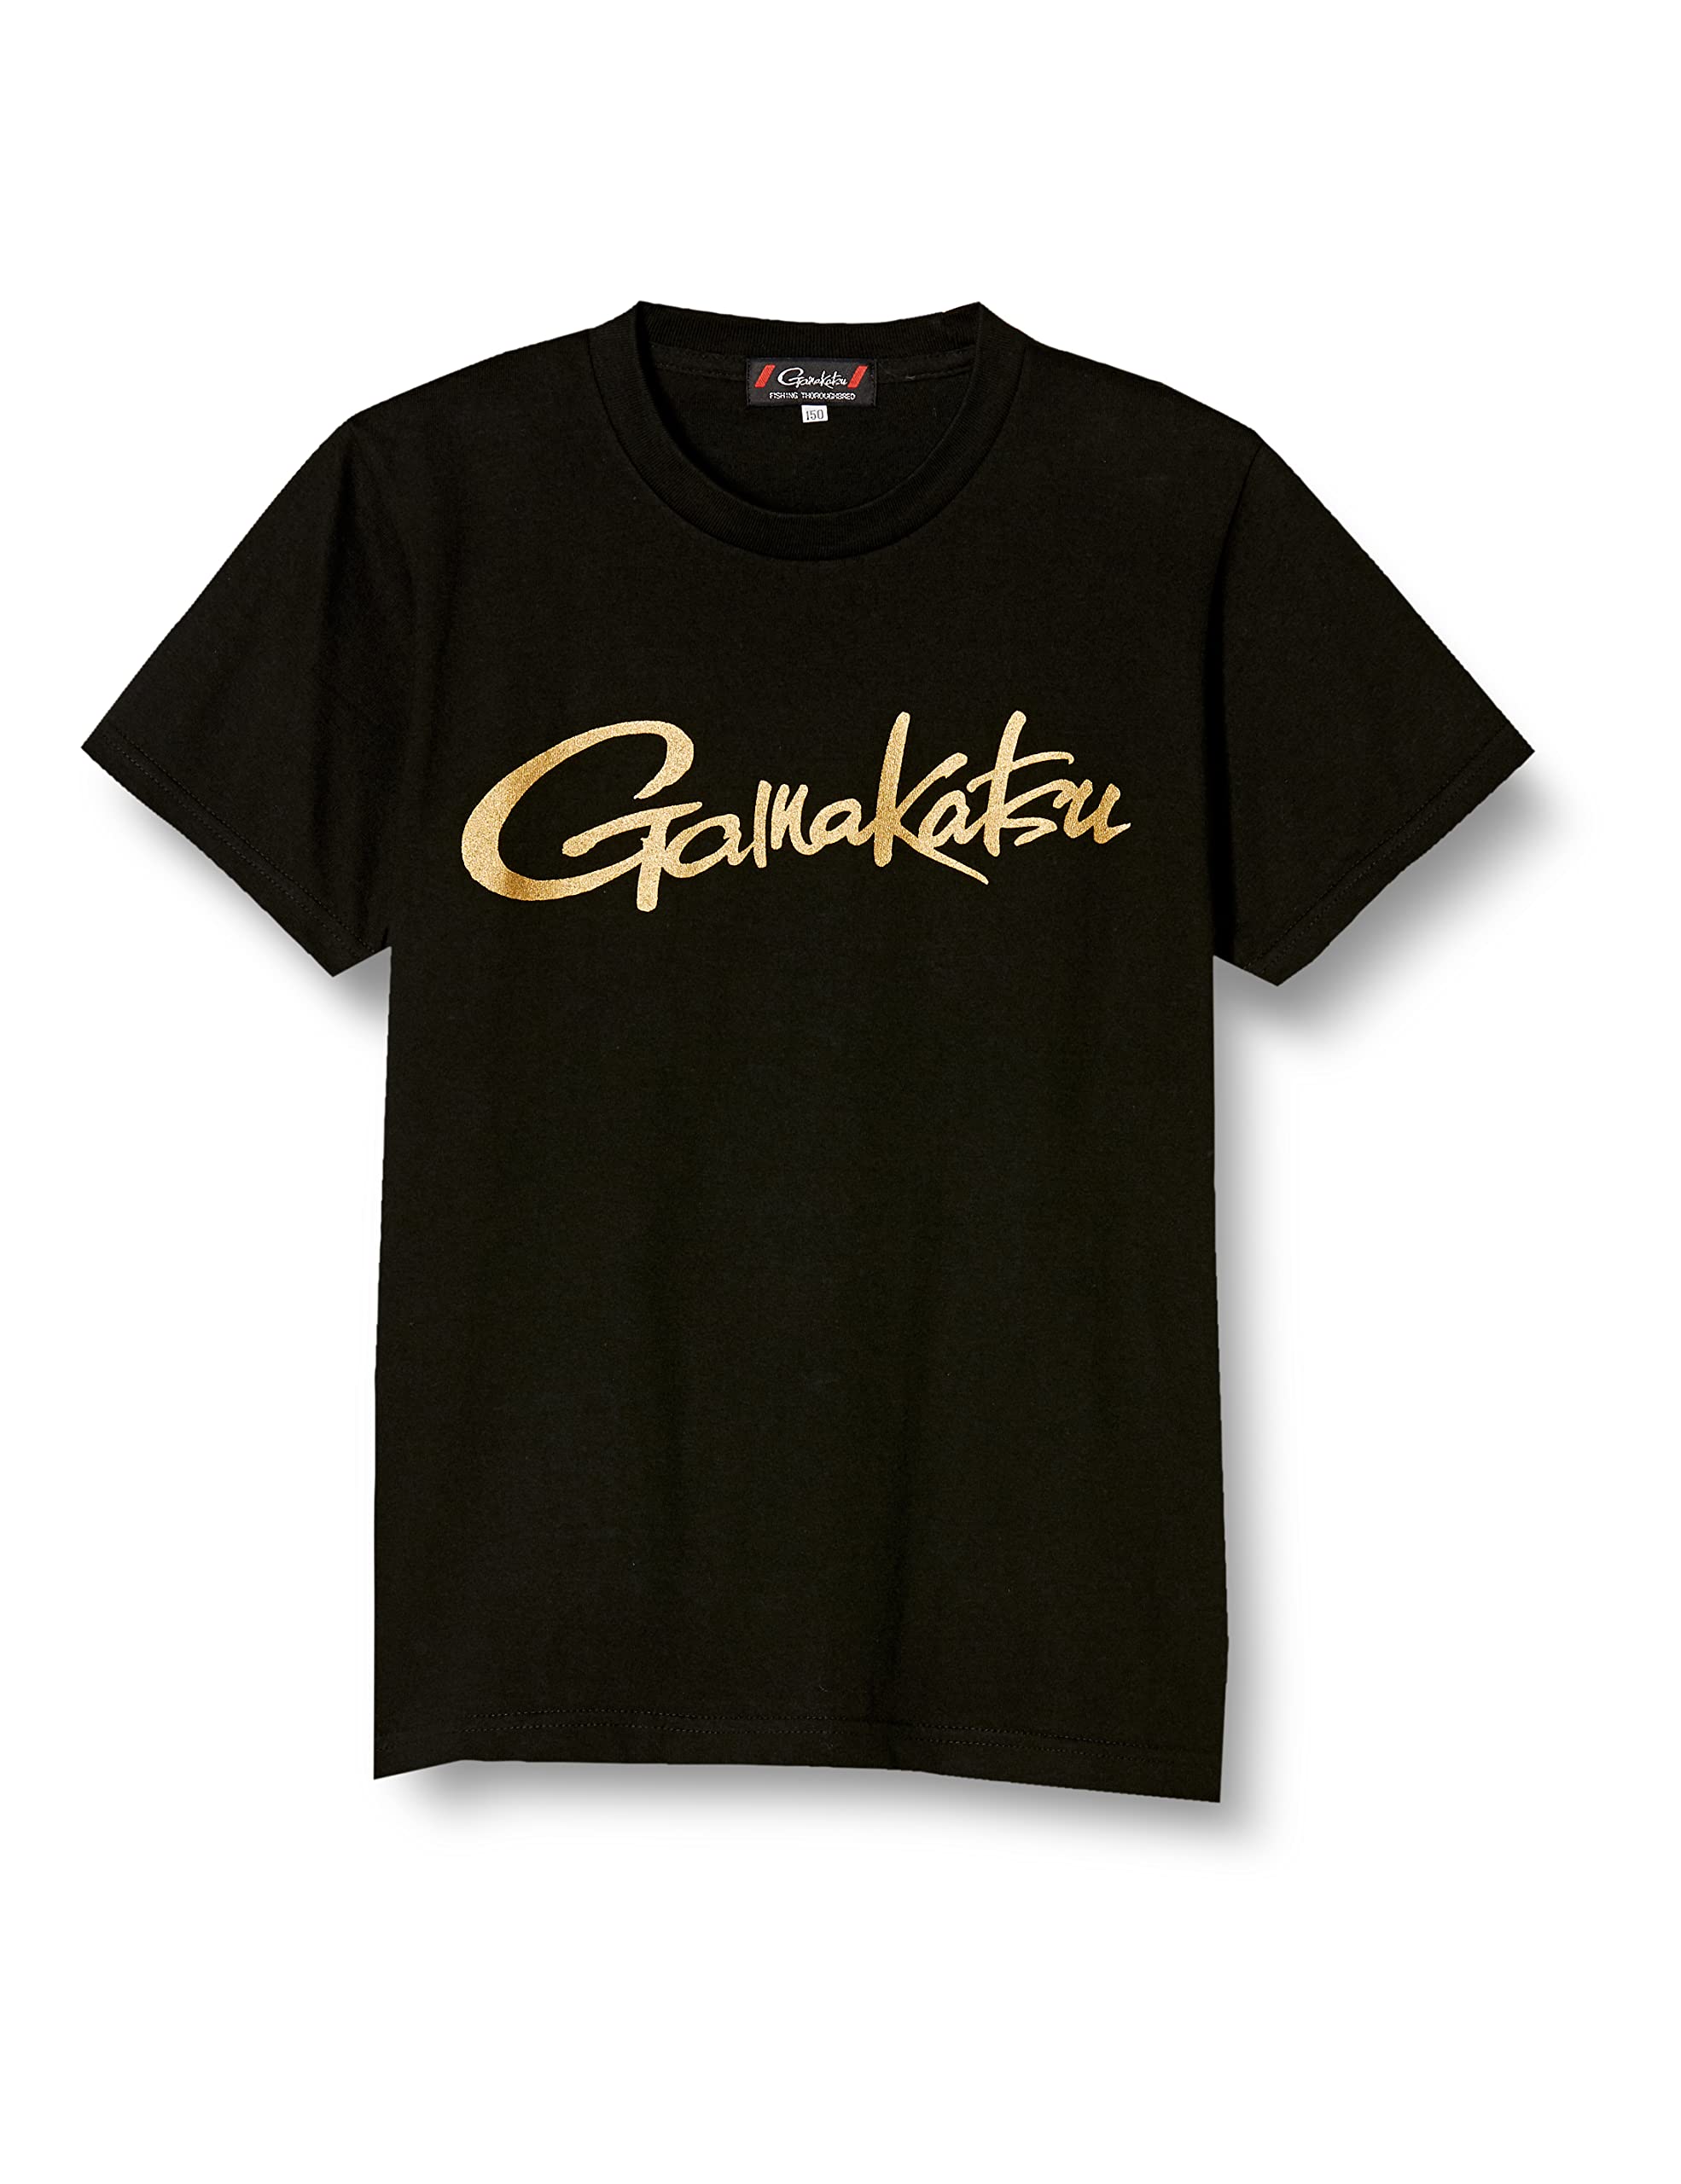 がまかつ(Gamakatsu) Tシャツ(筆記体ロゴ) GM3576 ブラック キッズ 150